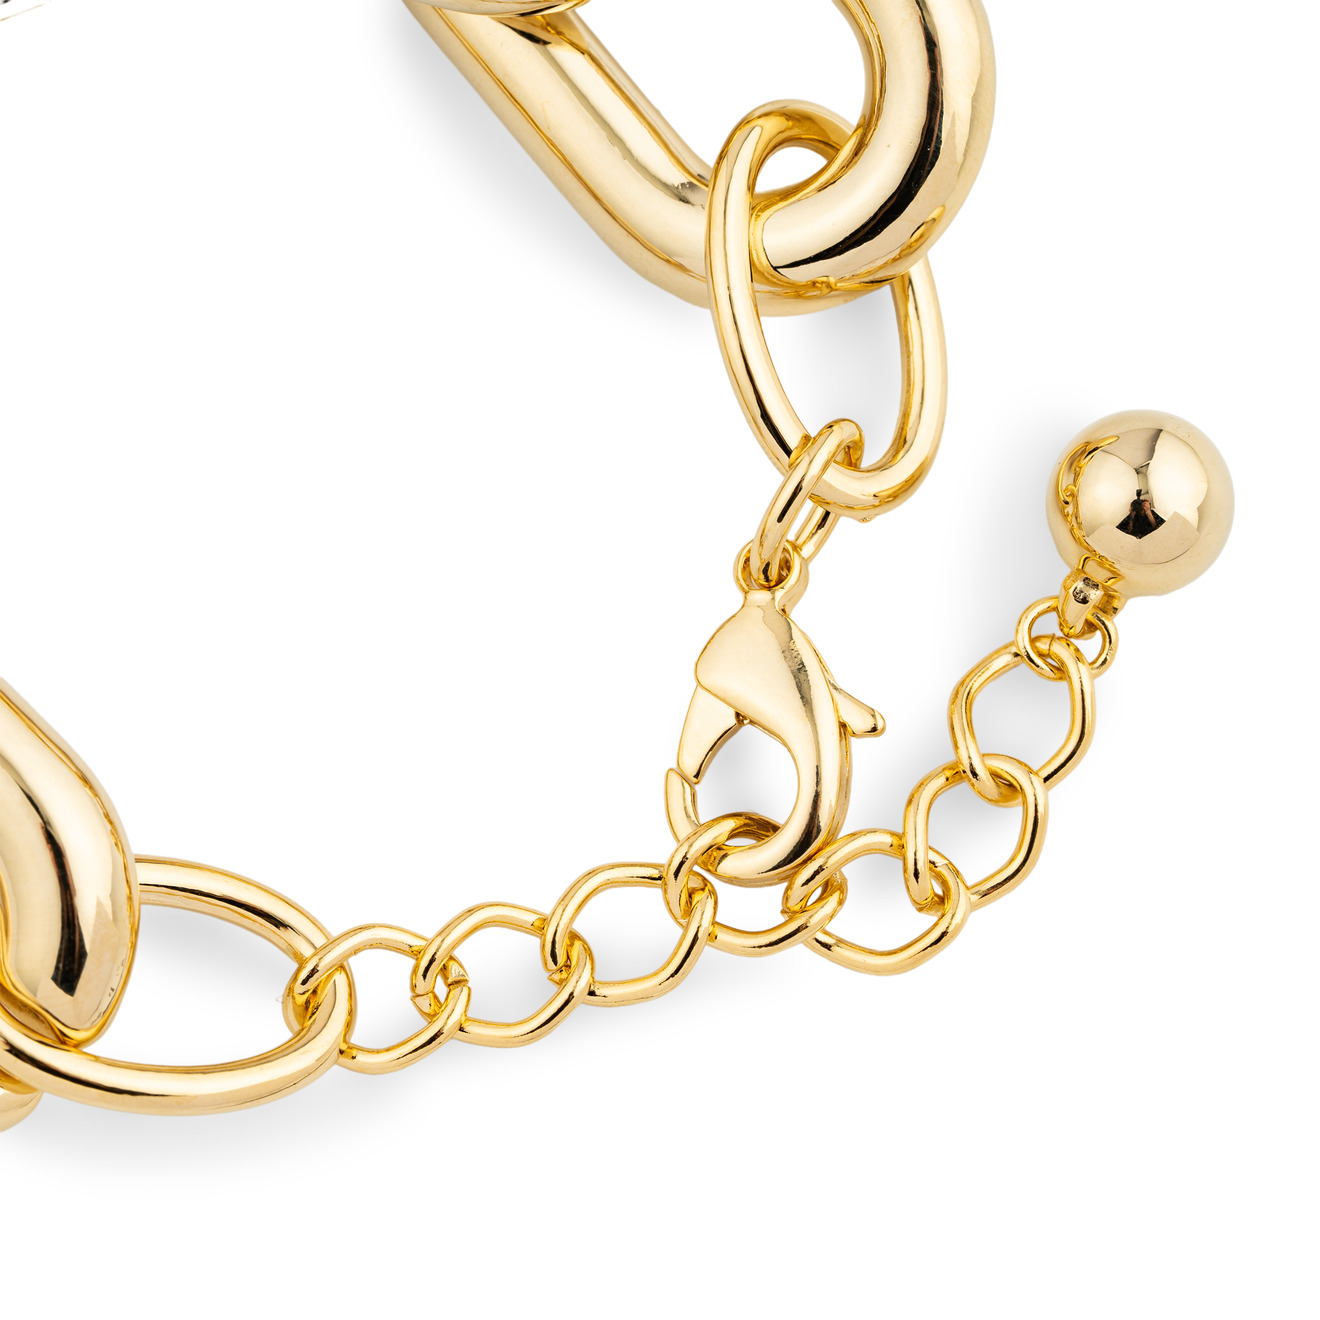 Aqua Золотистый браслет-цепь из крупных звеньев aqua золотистое колье цепь из крупных звеньев